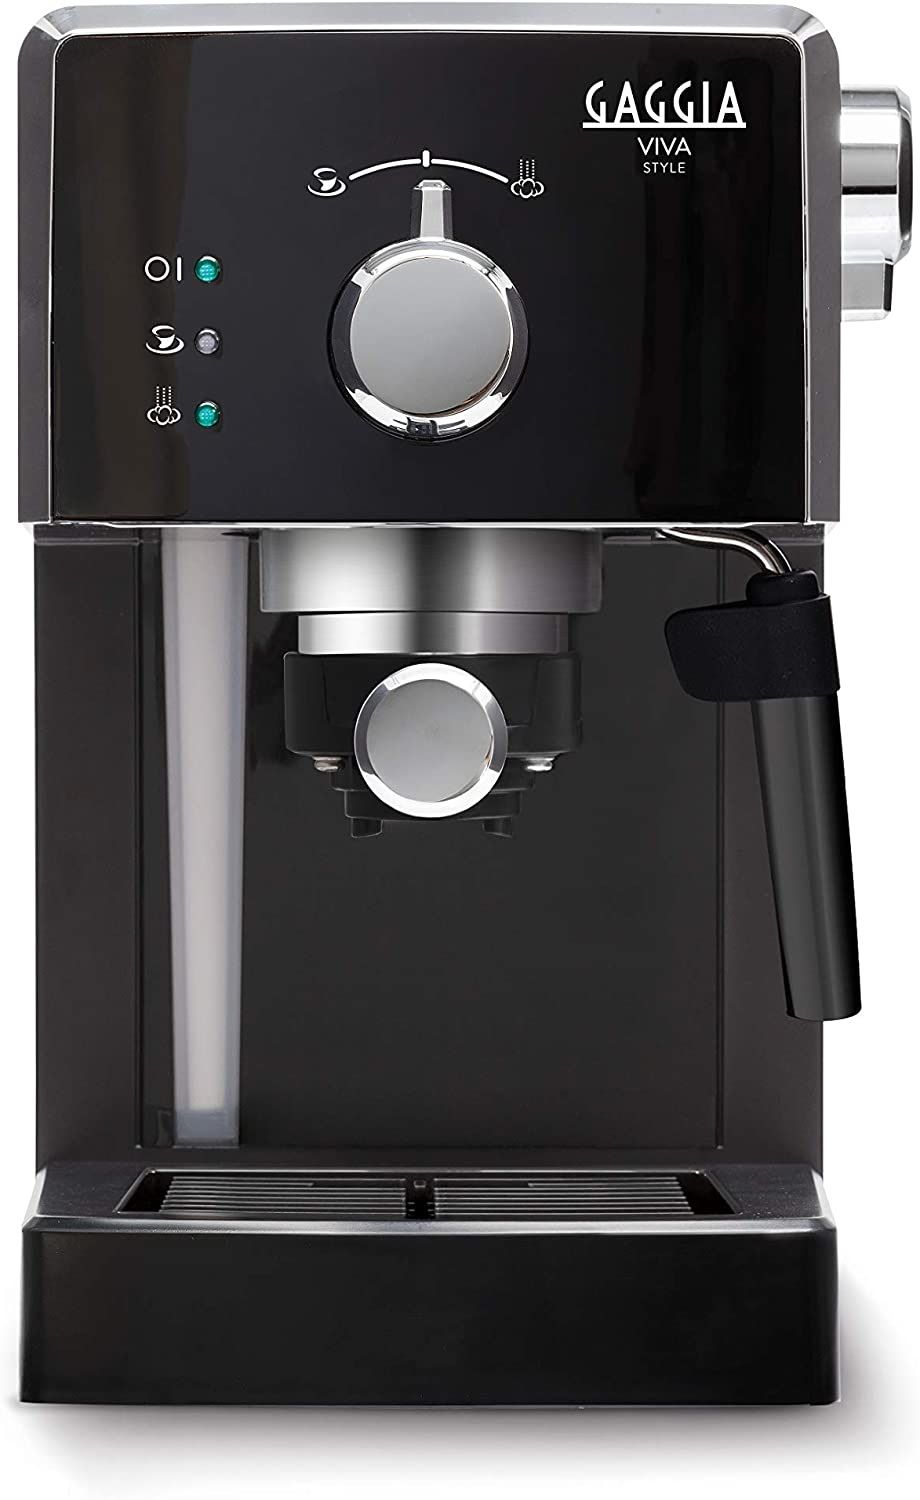 Gaggia Viva Style: macchina per caffè e cappuccio al 51% su